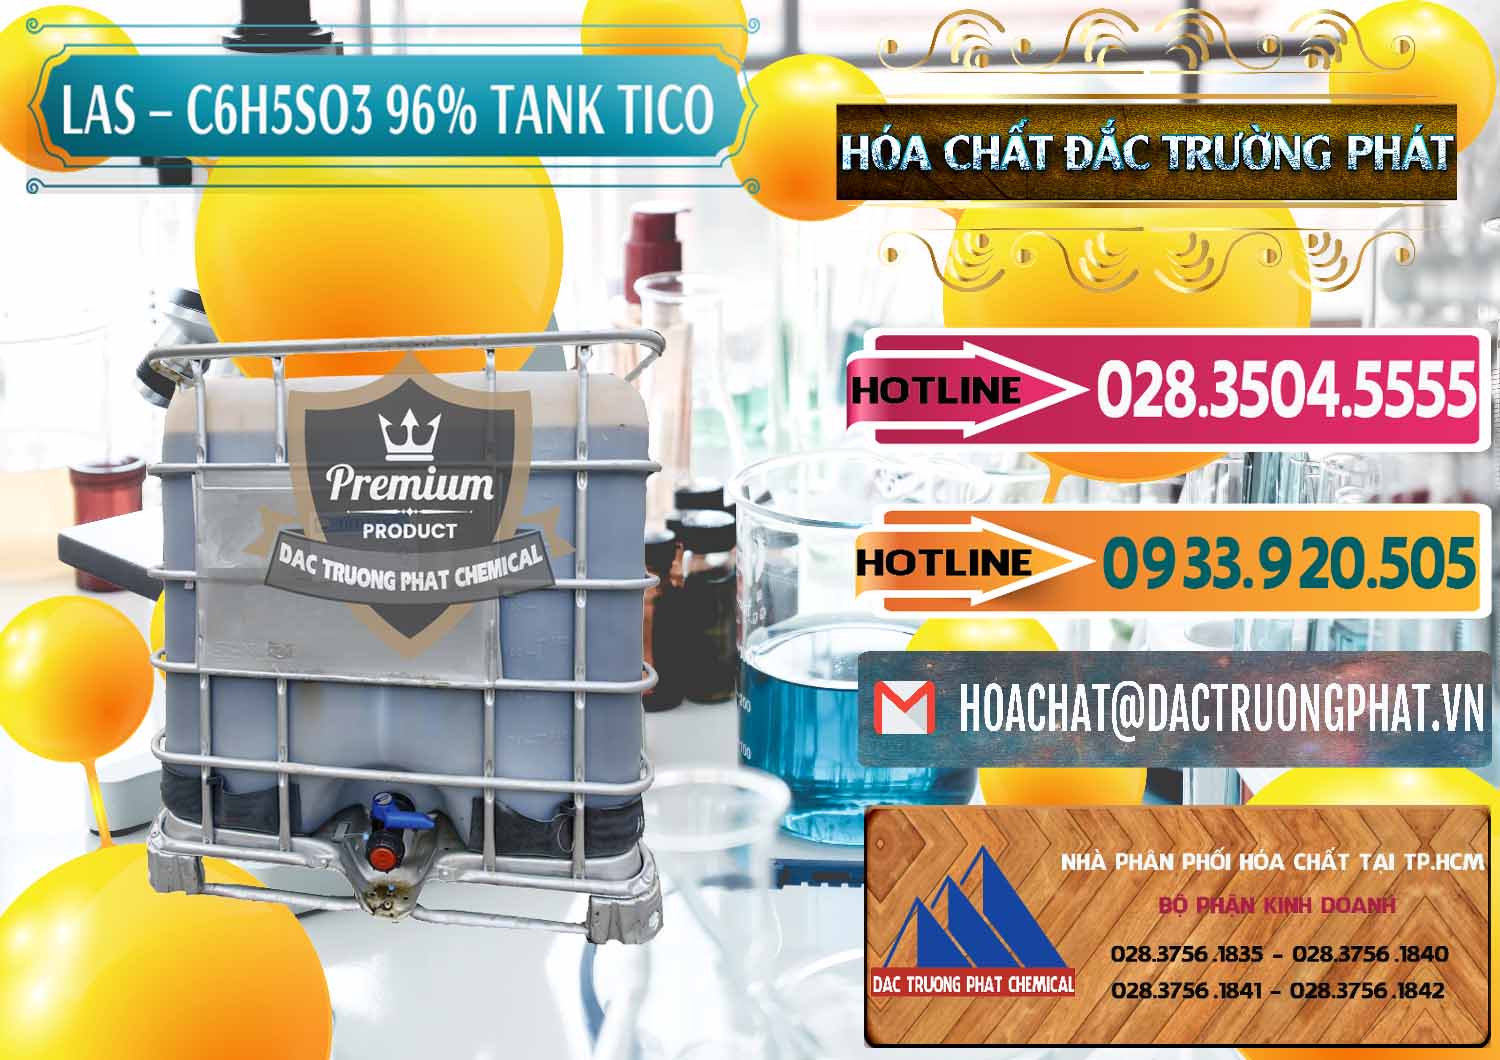 Nơi bán ( phân phối ) Chất tạo bọt Las P Tico Tank IBC Bồn Việt Nam - 0488 - Công ty chuyên cung cấp & nhập khẩu hóa chất tại TP.HCM - dactruongphat.vn